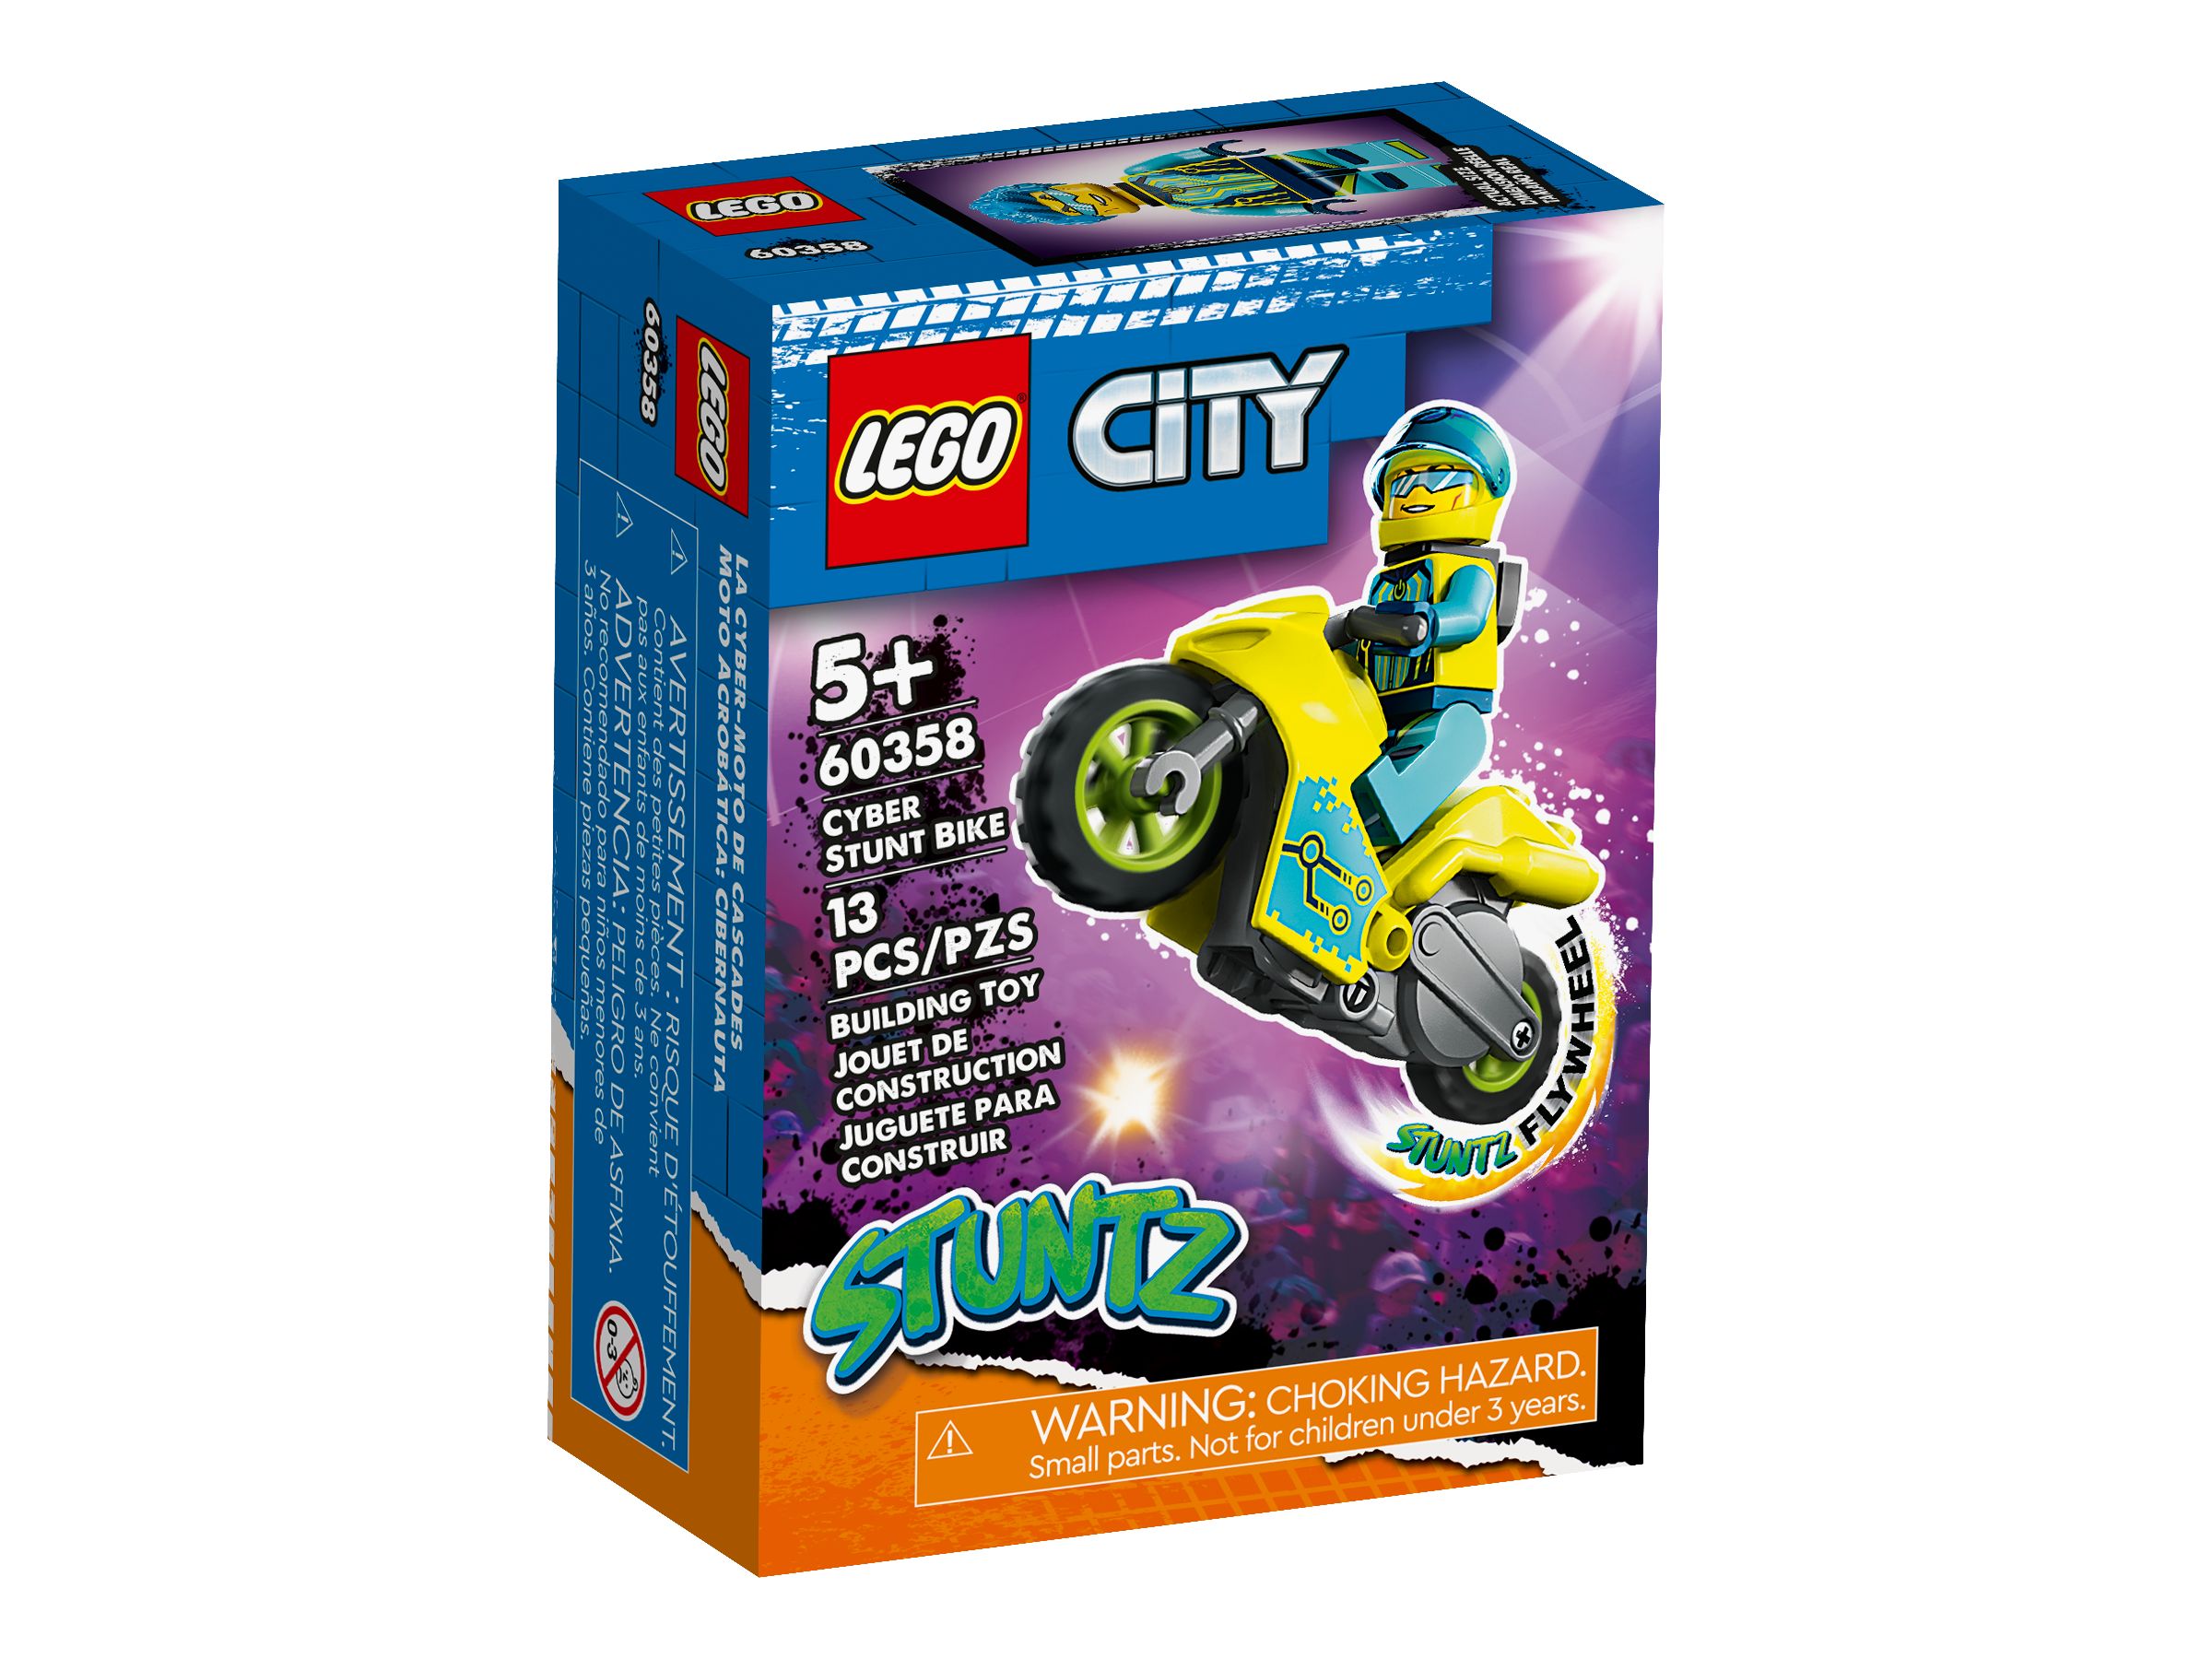 LEGO City 60358 Cyber-Stuntbike LEGO_60358_alt1.jpg